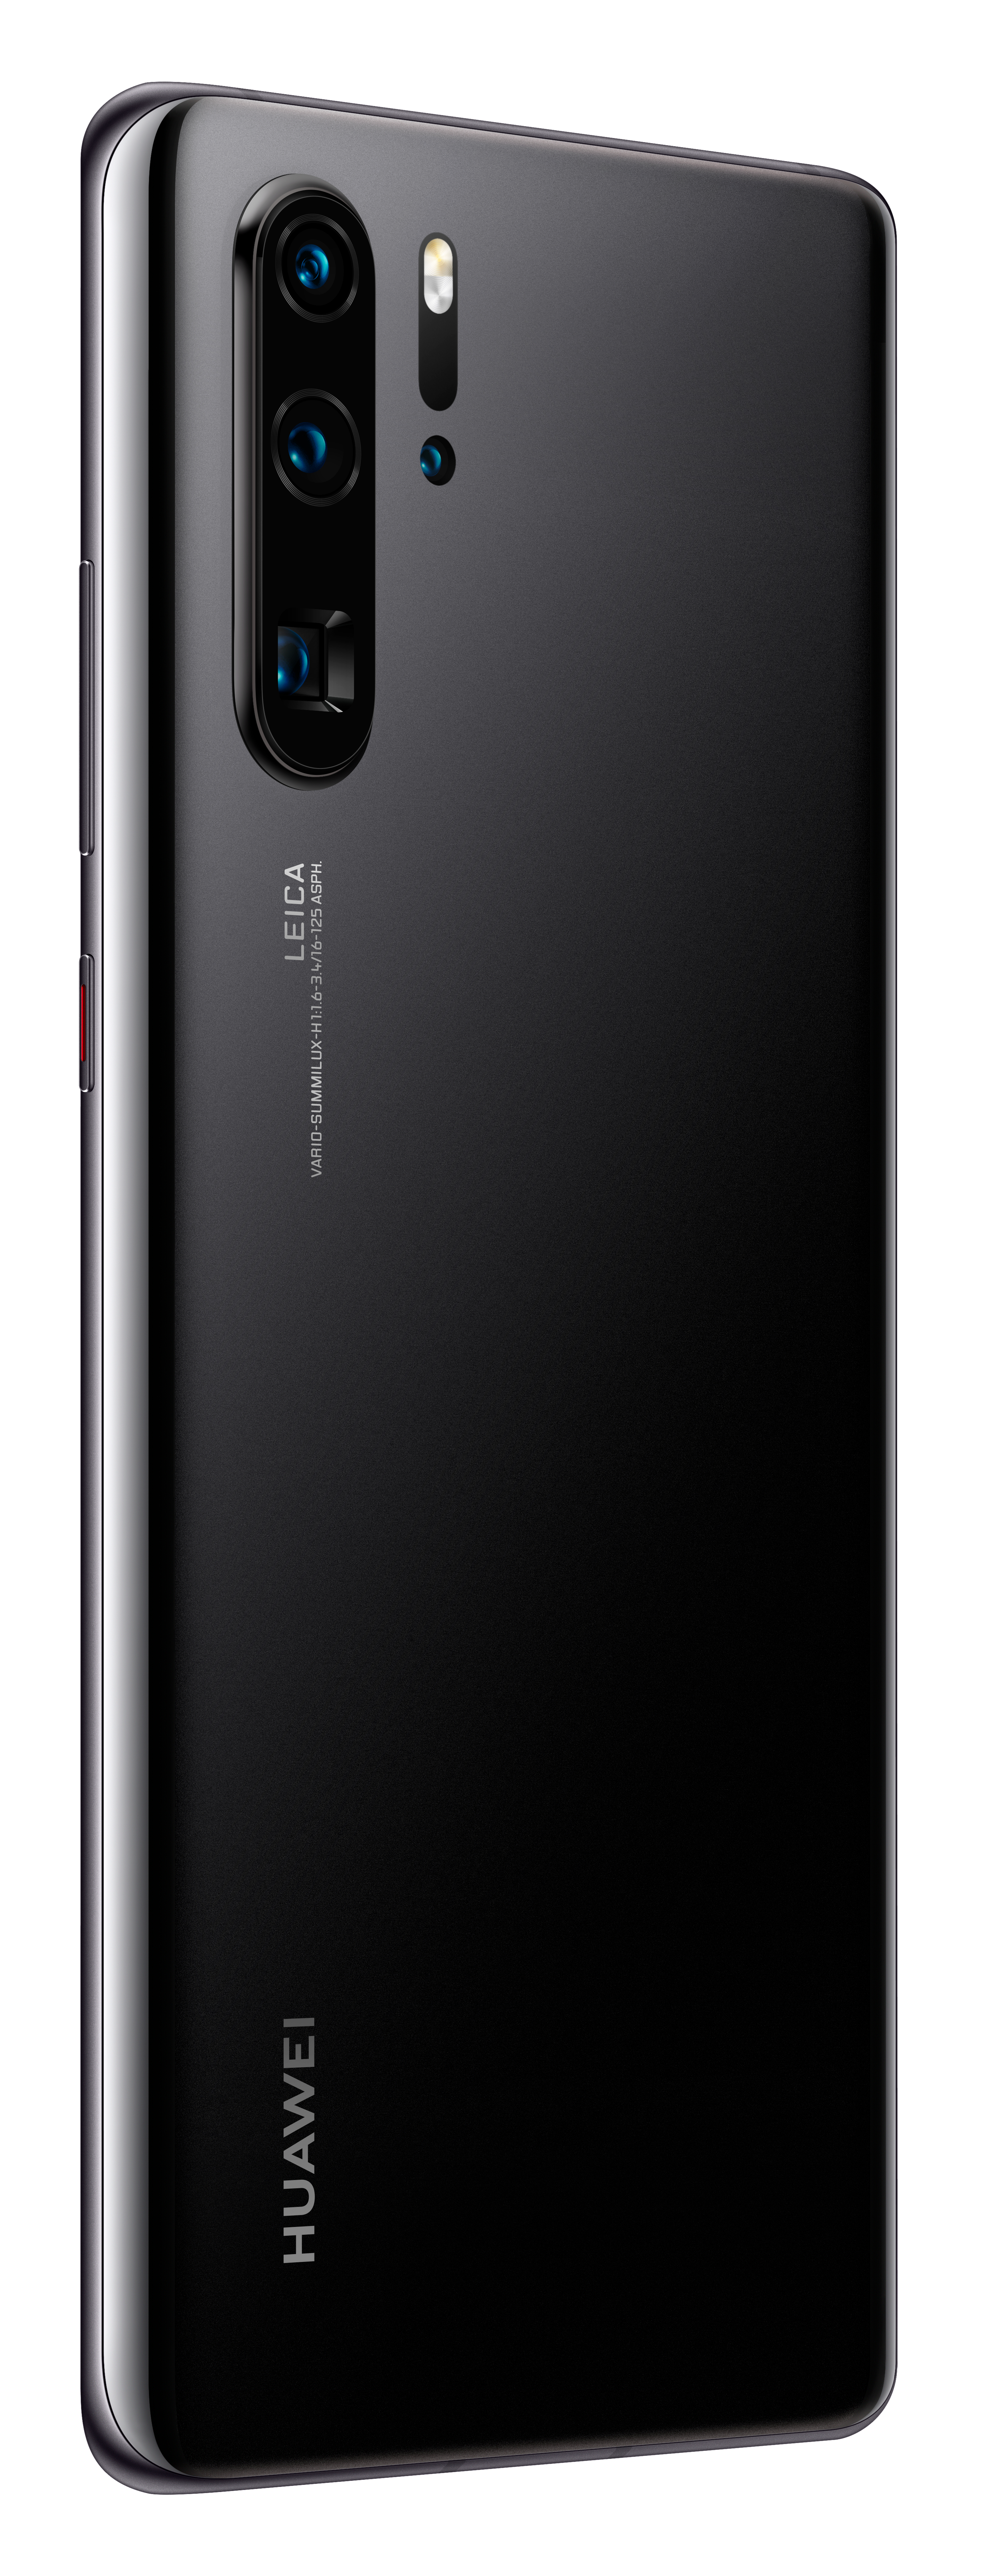 SIM 256 Pro HUAWEI P30 GB NEW Black Dual EDITION